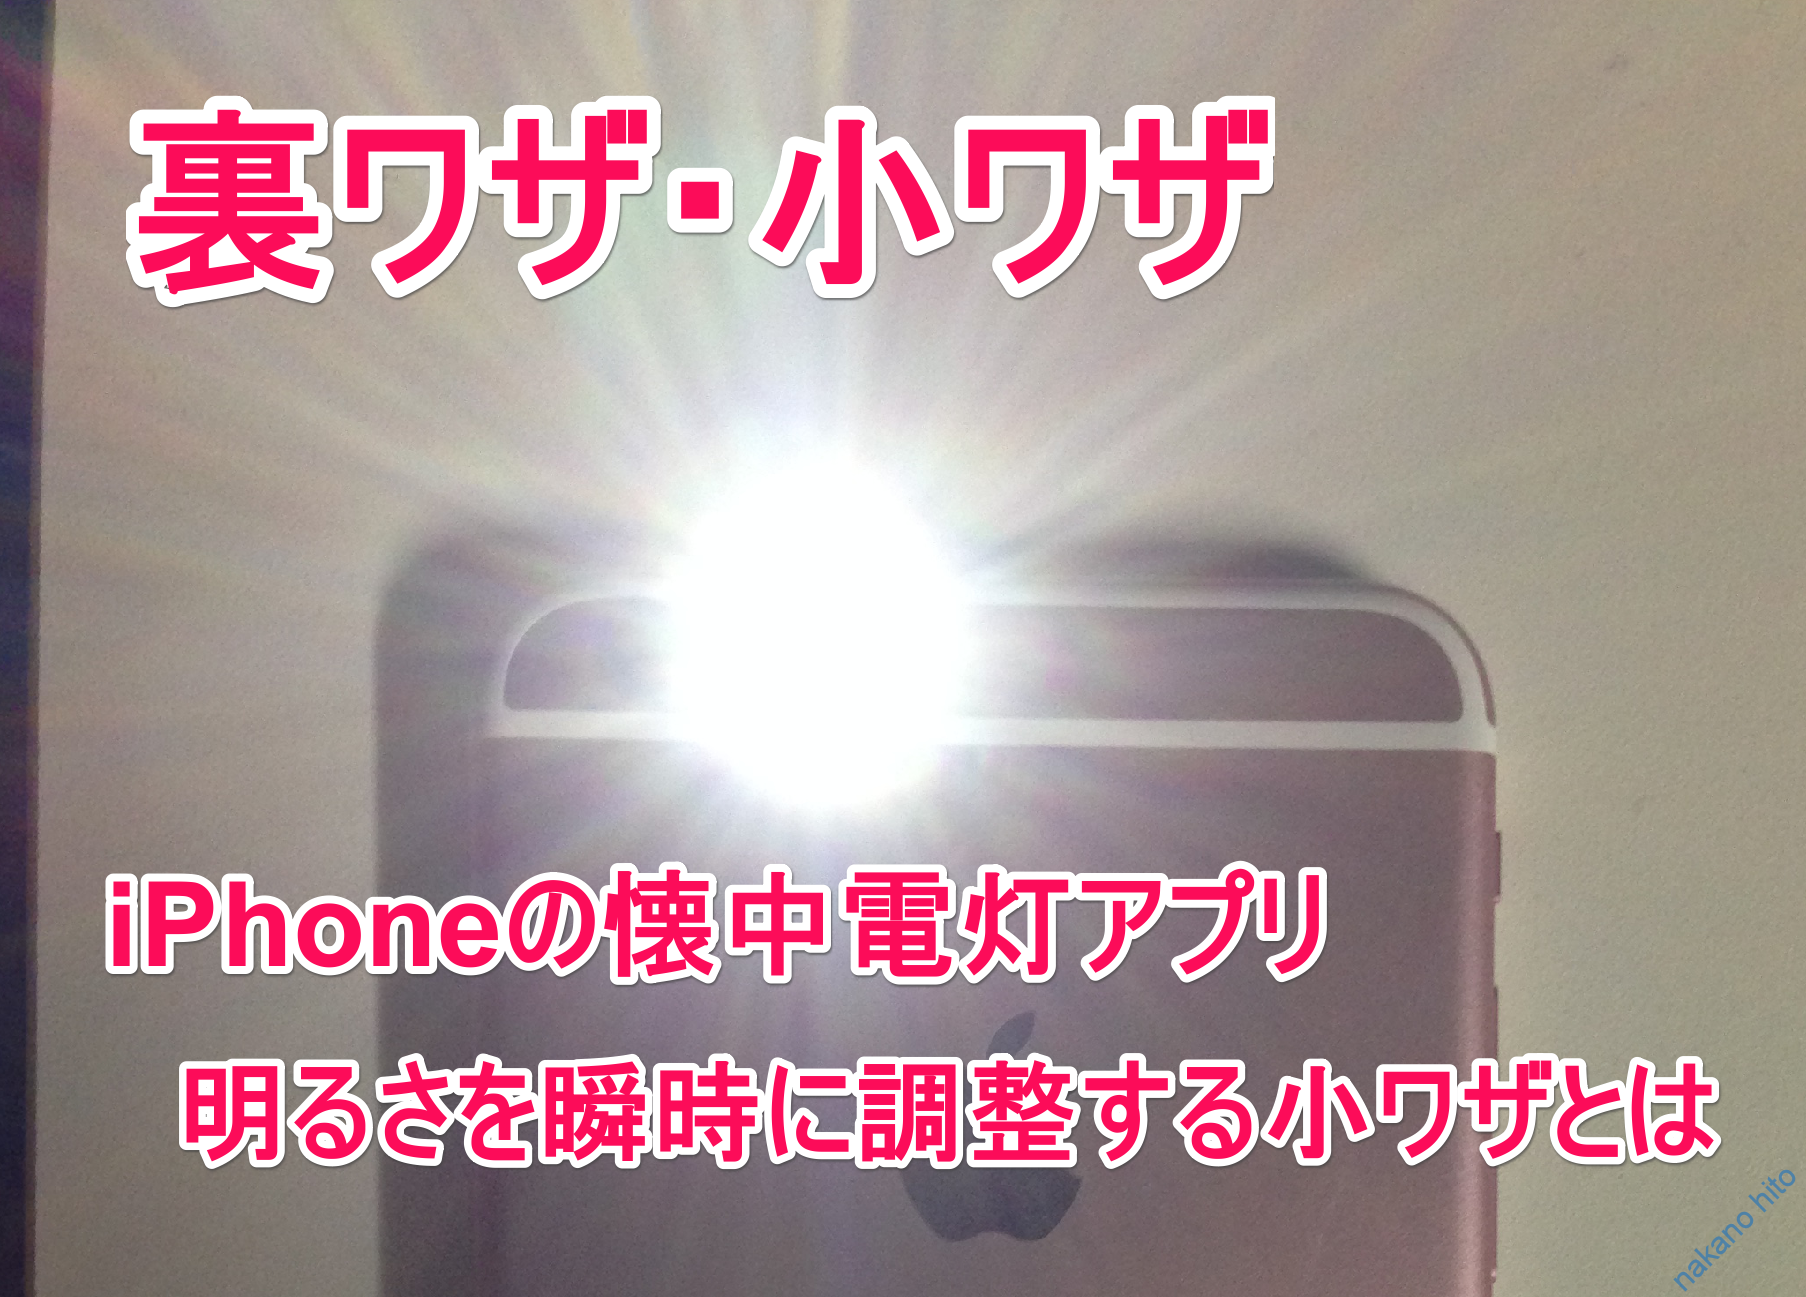 Iphoneのライト懐中電灯が使えない 押せない 時の6つ原因と効果的な4つの対処法 Iphone修理 トラブル解決のアップルバズーカ